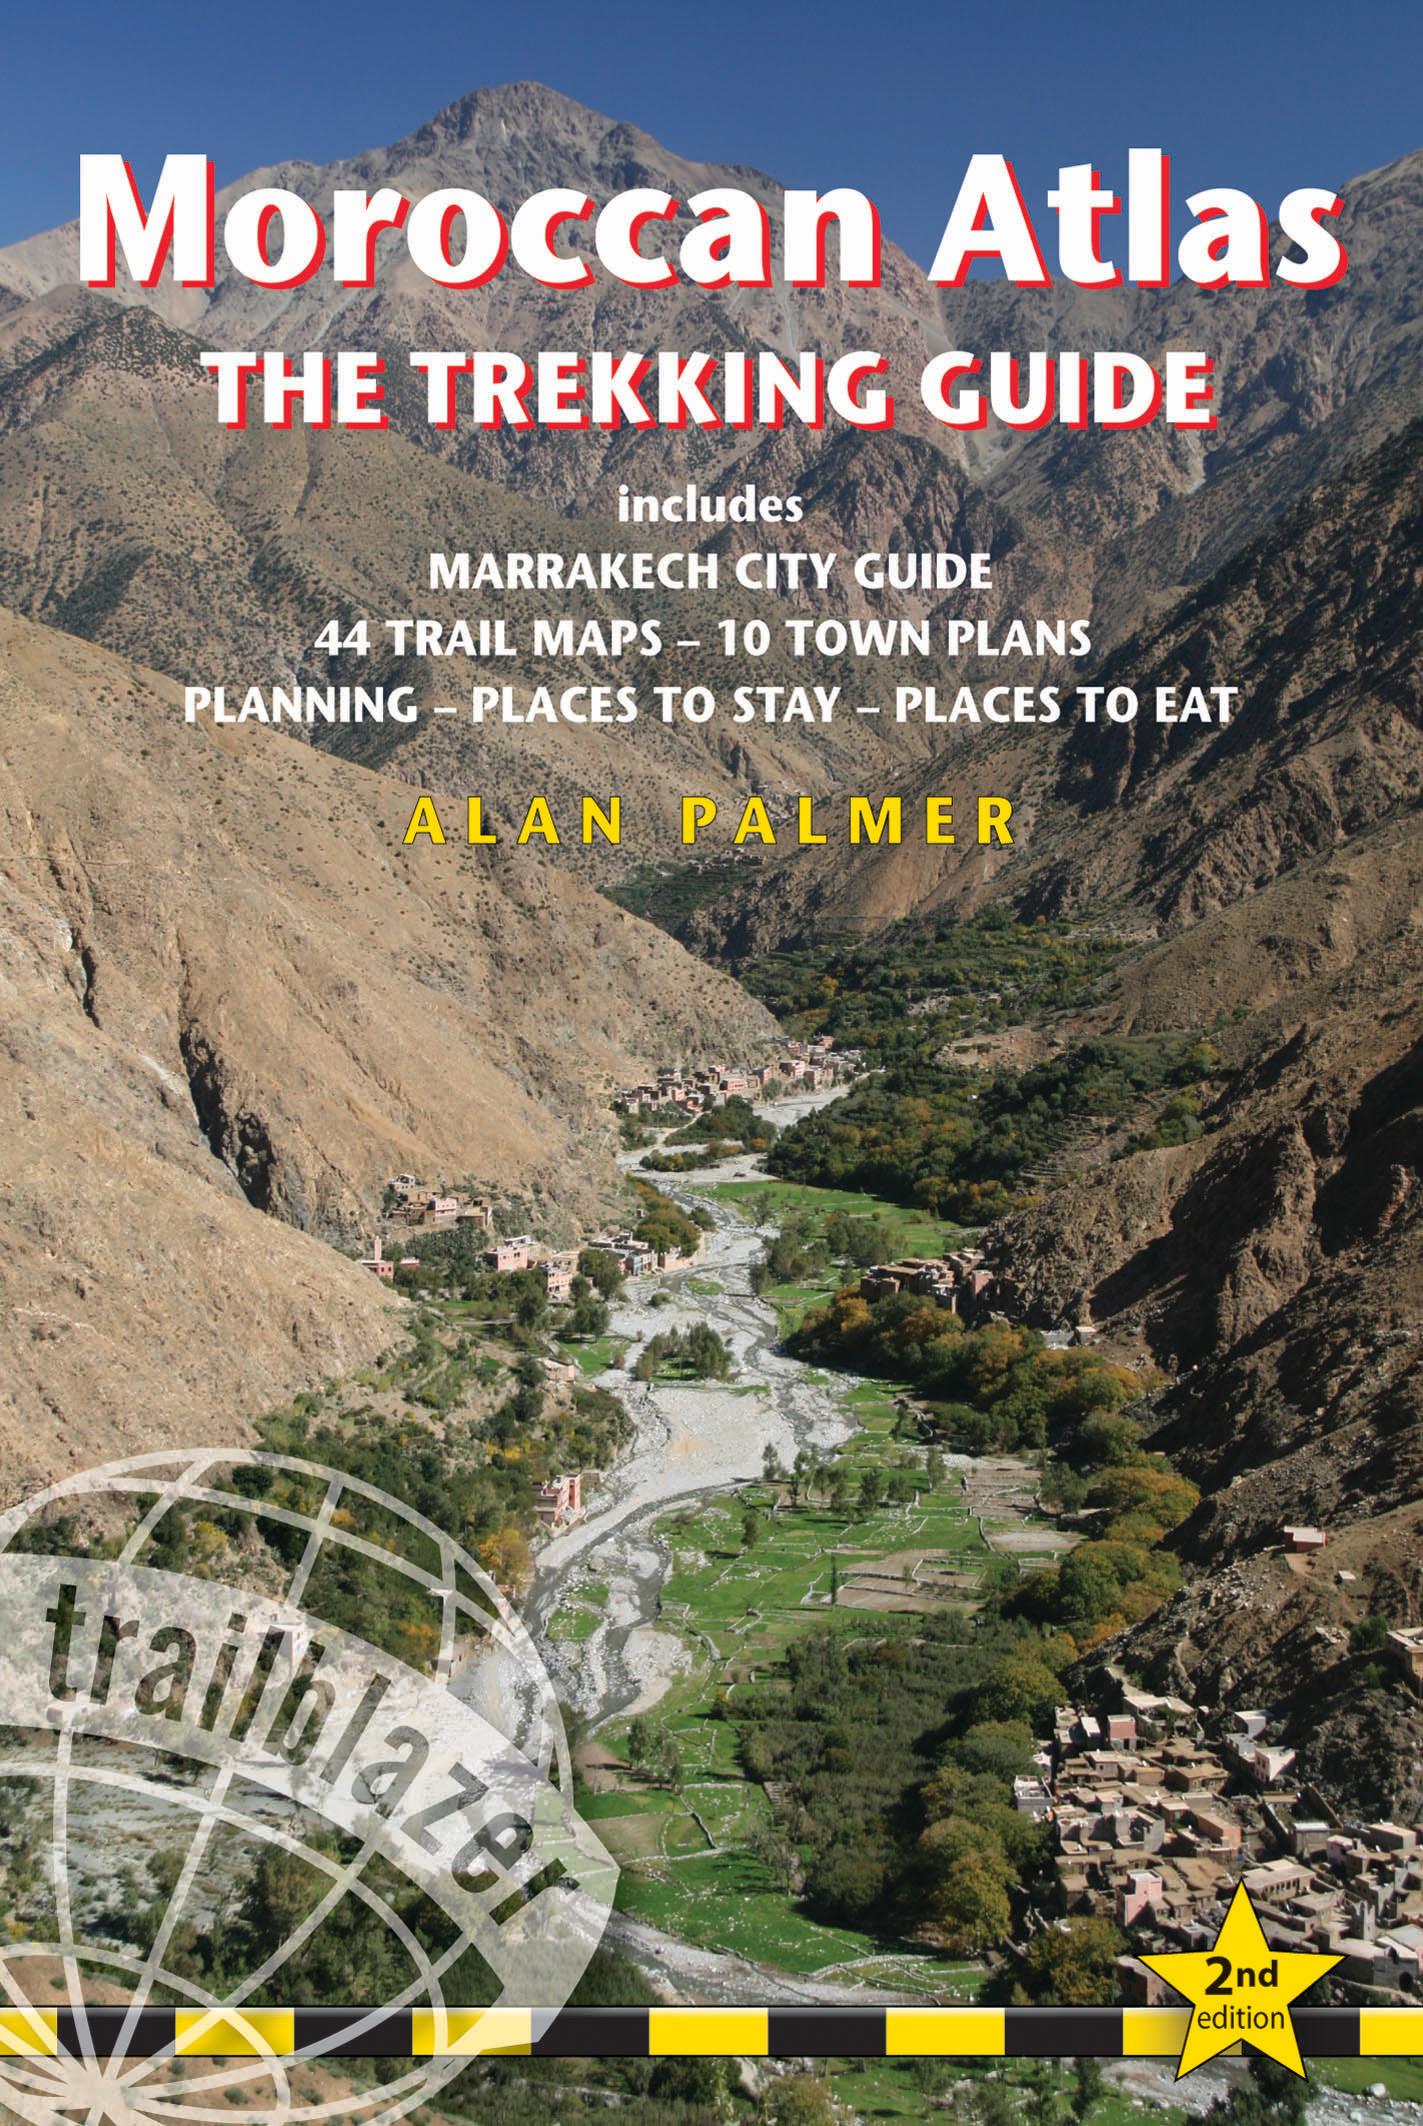 Trailblazer vydavatelství průvodce Moroccan Atlas trekking guide anglicky